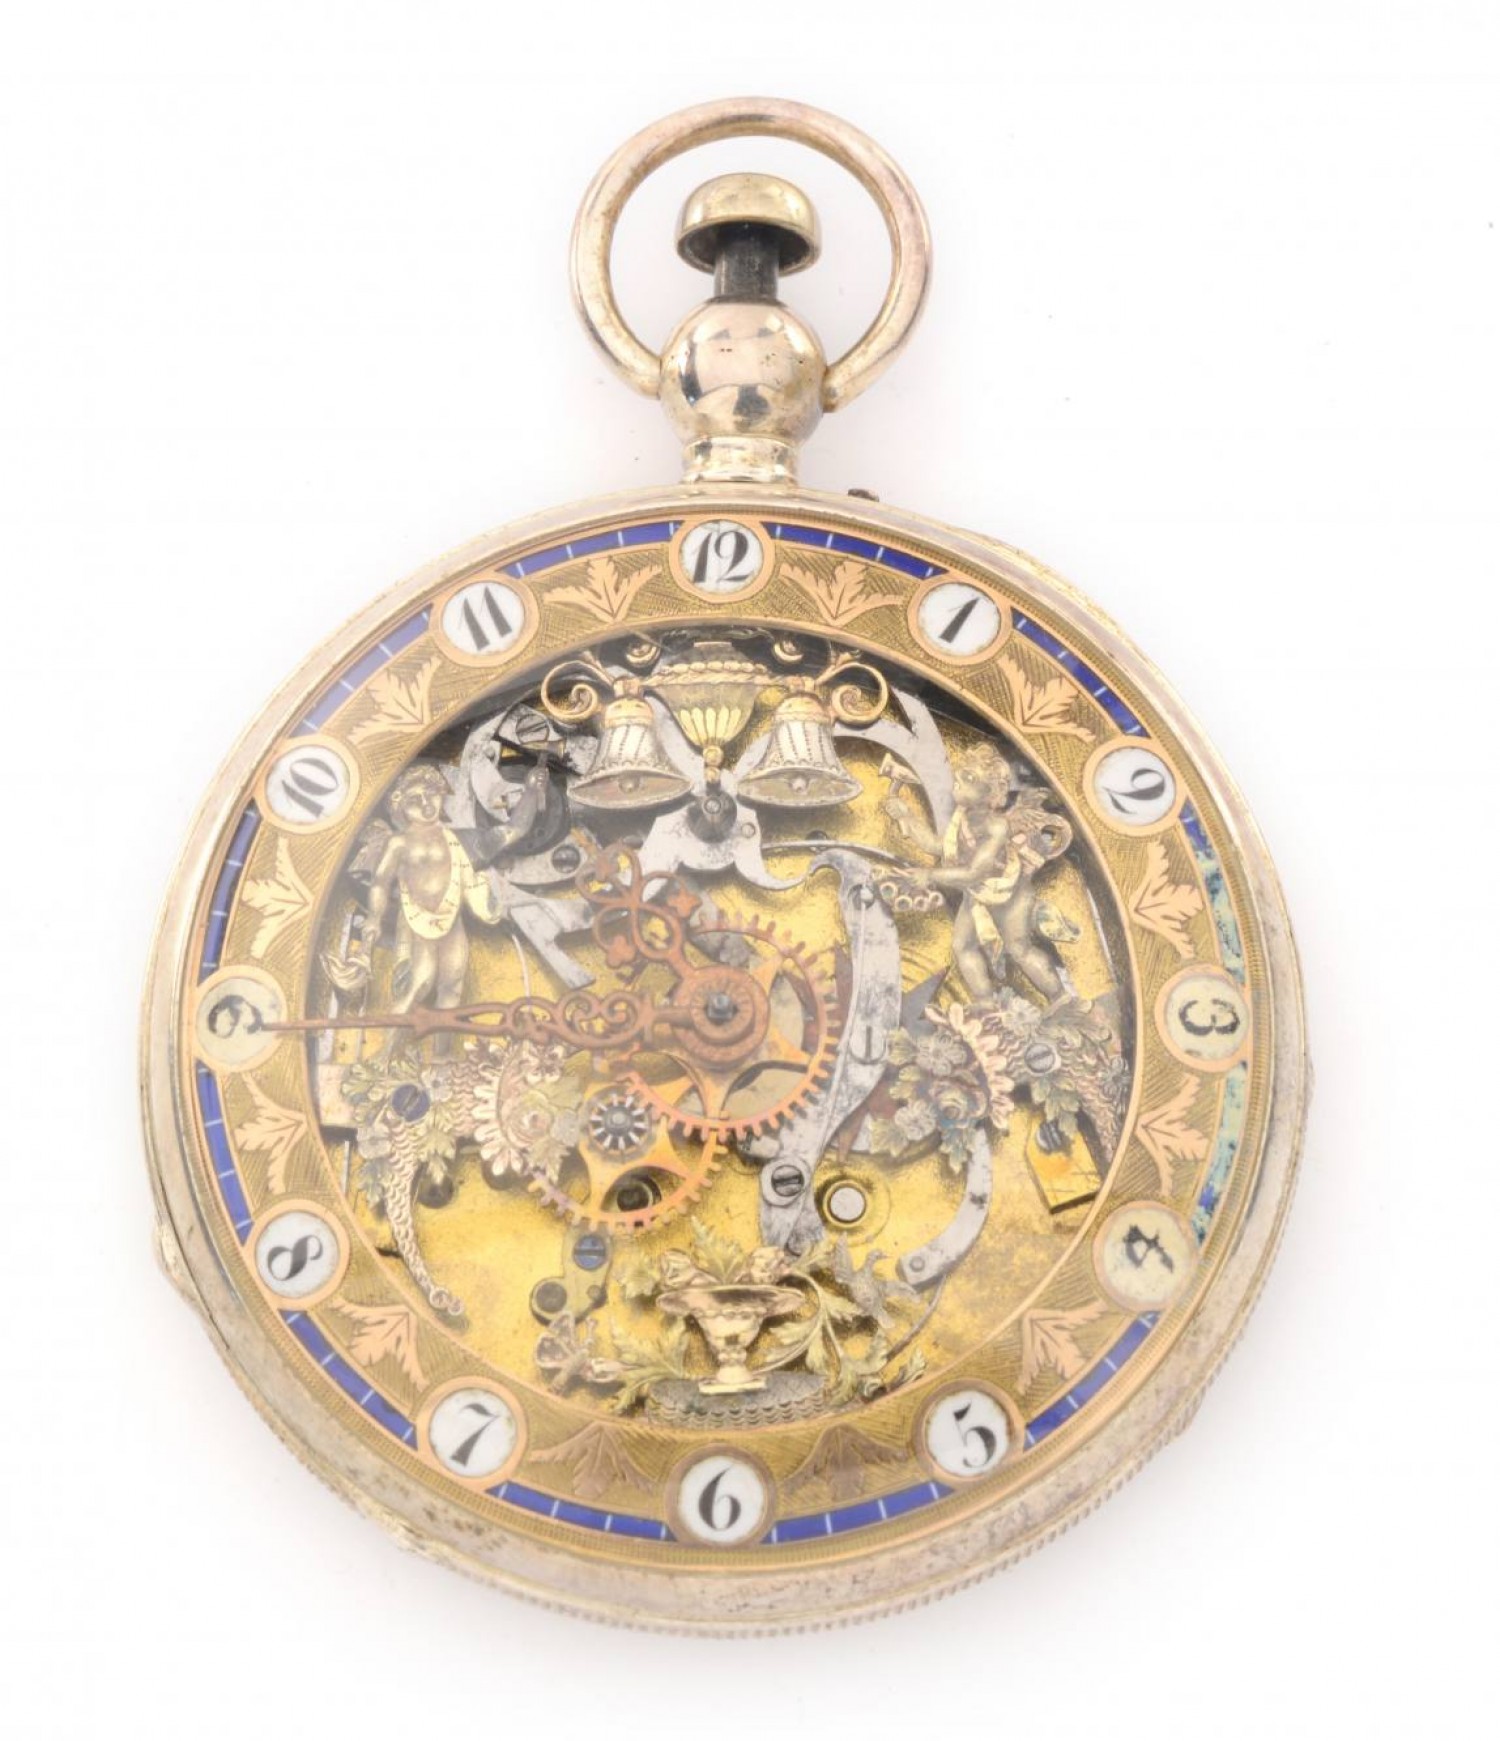 François L´Hardy: skeletové hodinky automaton se zvoníky, kol. 1810 stříbro, email, průměr 5,5 cm Zezula 5. 10. 2019 vyvolávací cena: 130 000 Kč (+ 20% provize)